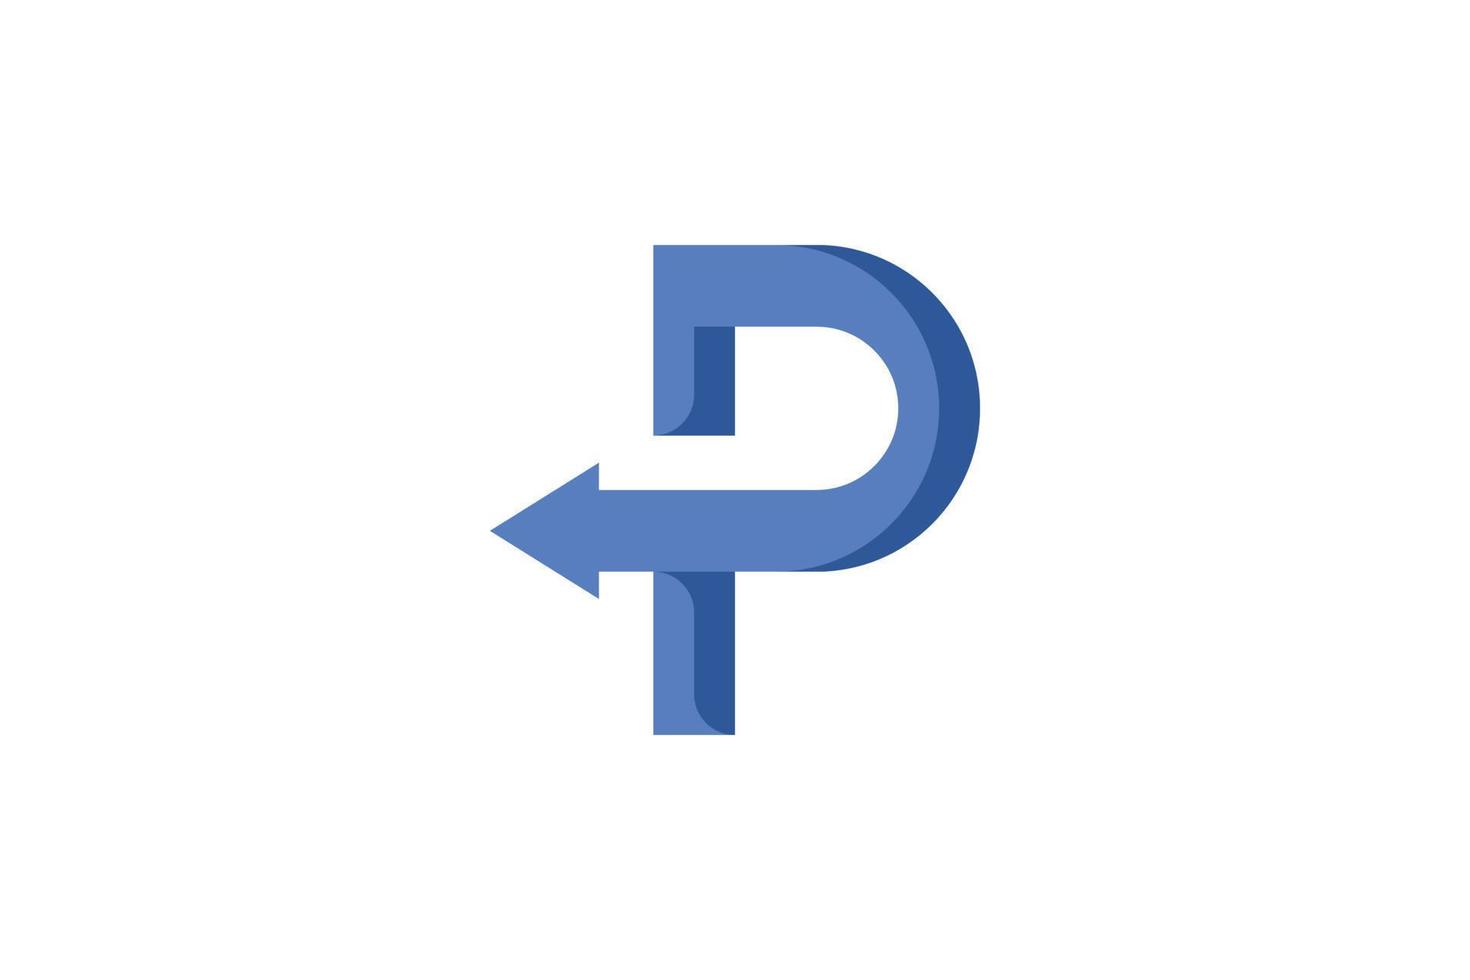 letra p logotipo moderno vector